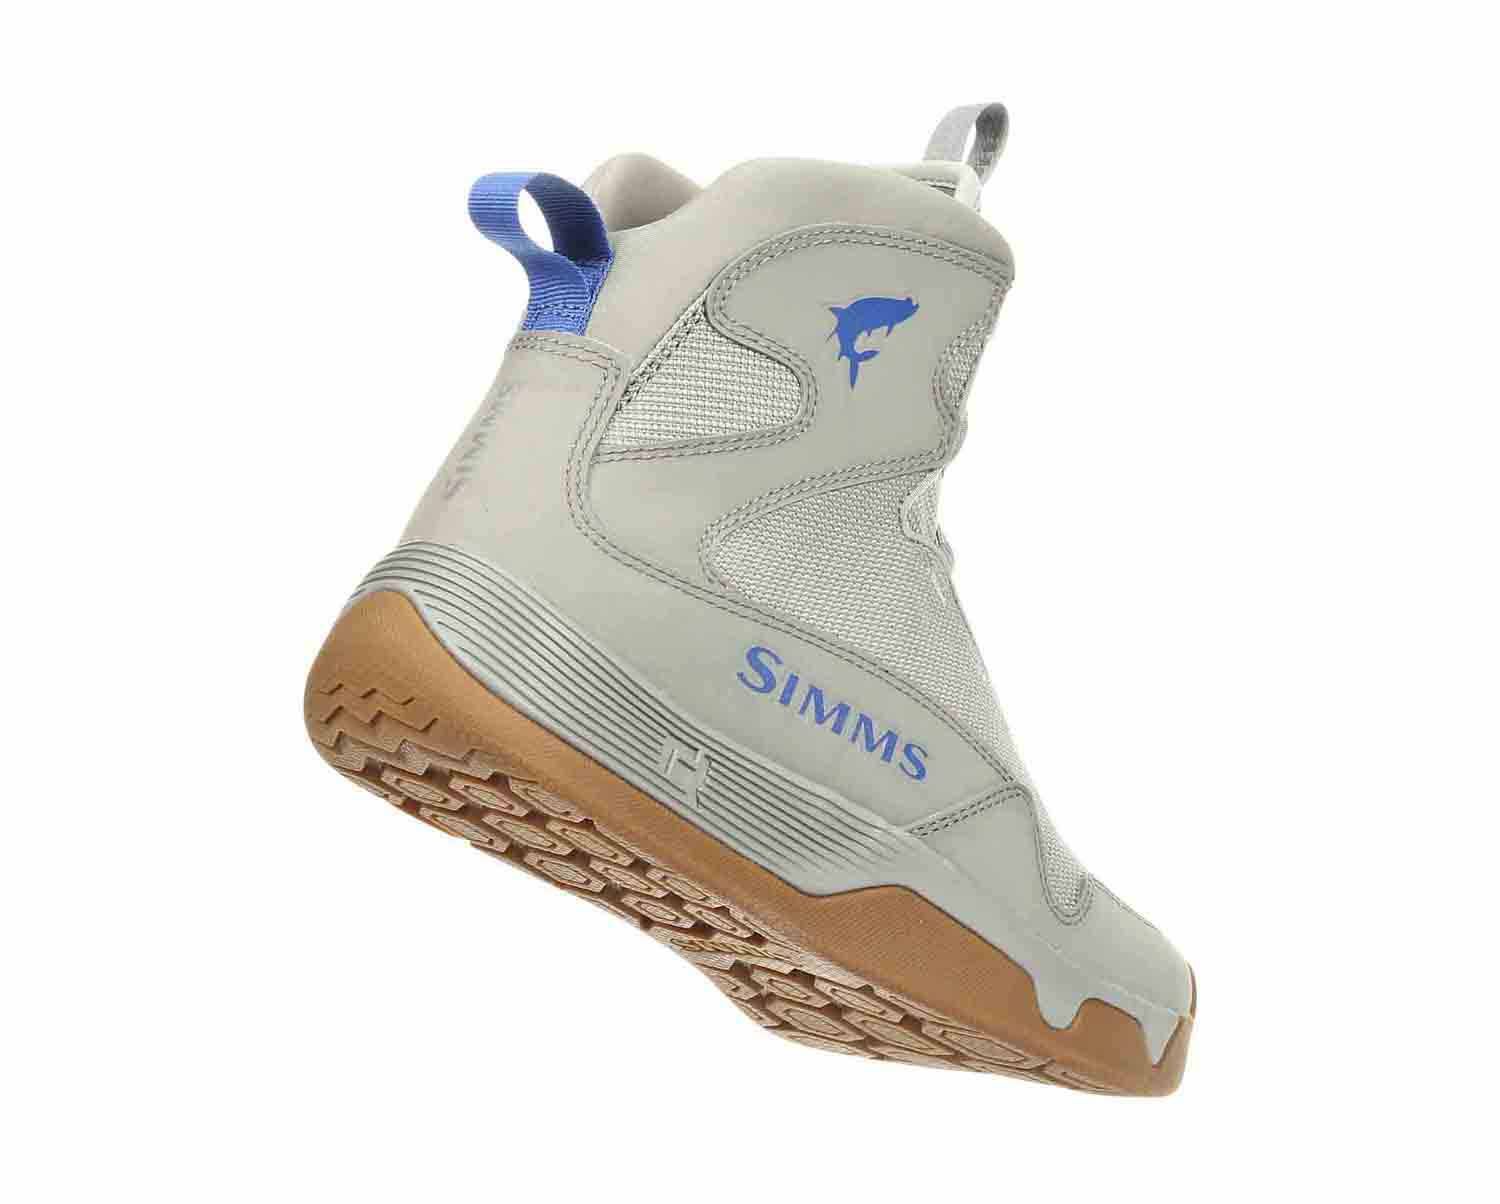 Simms Men's Flats Sneakers